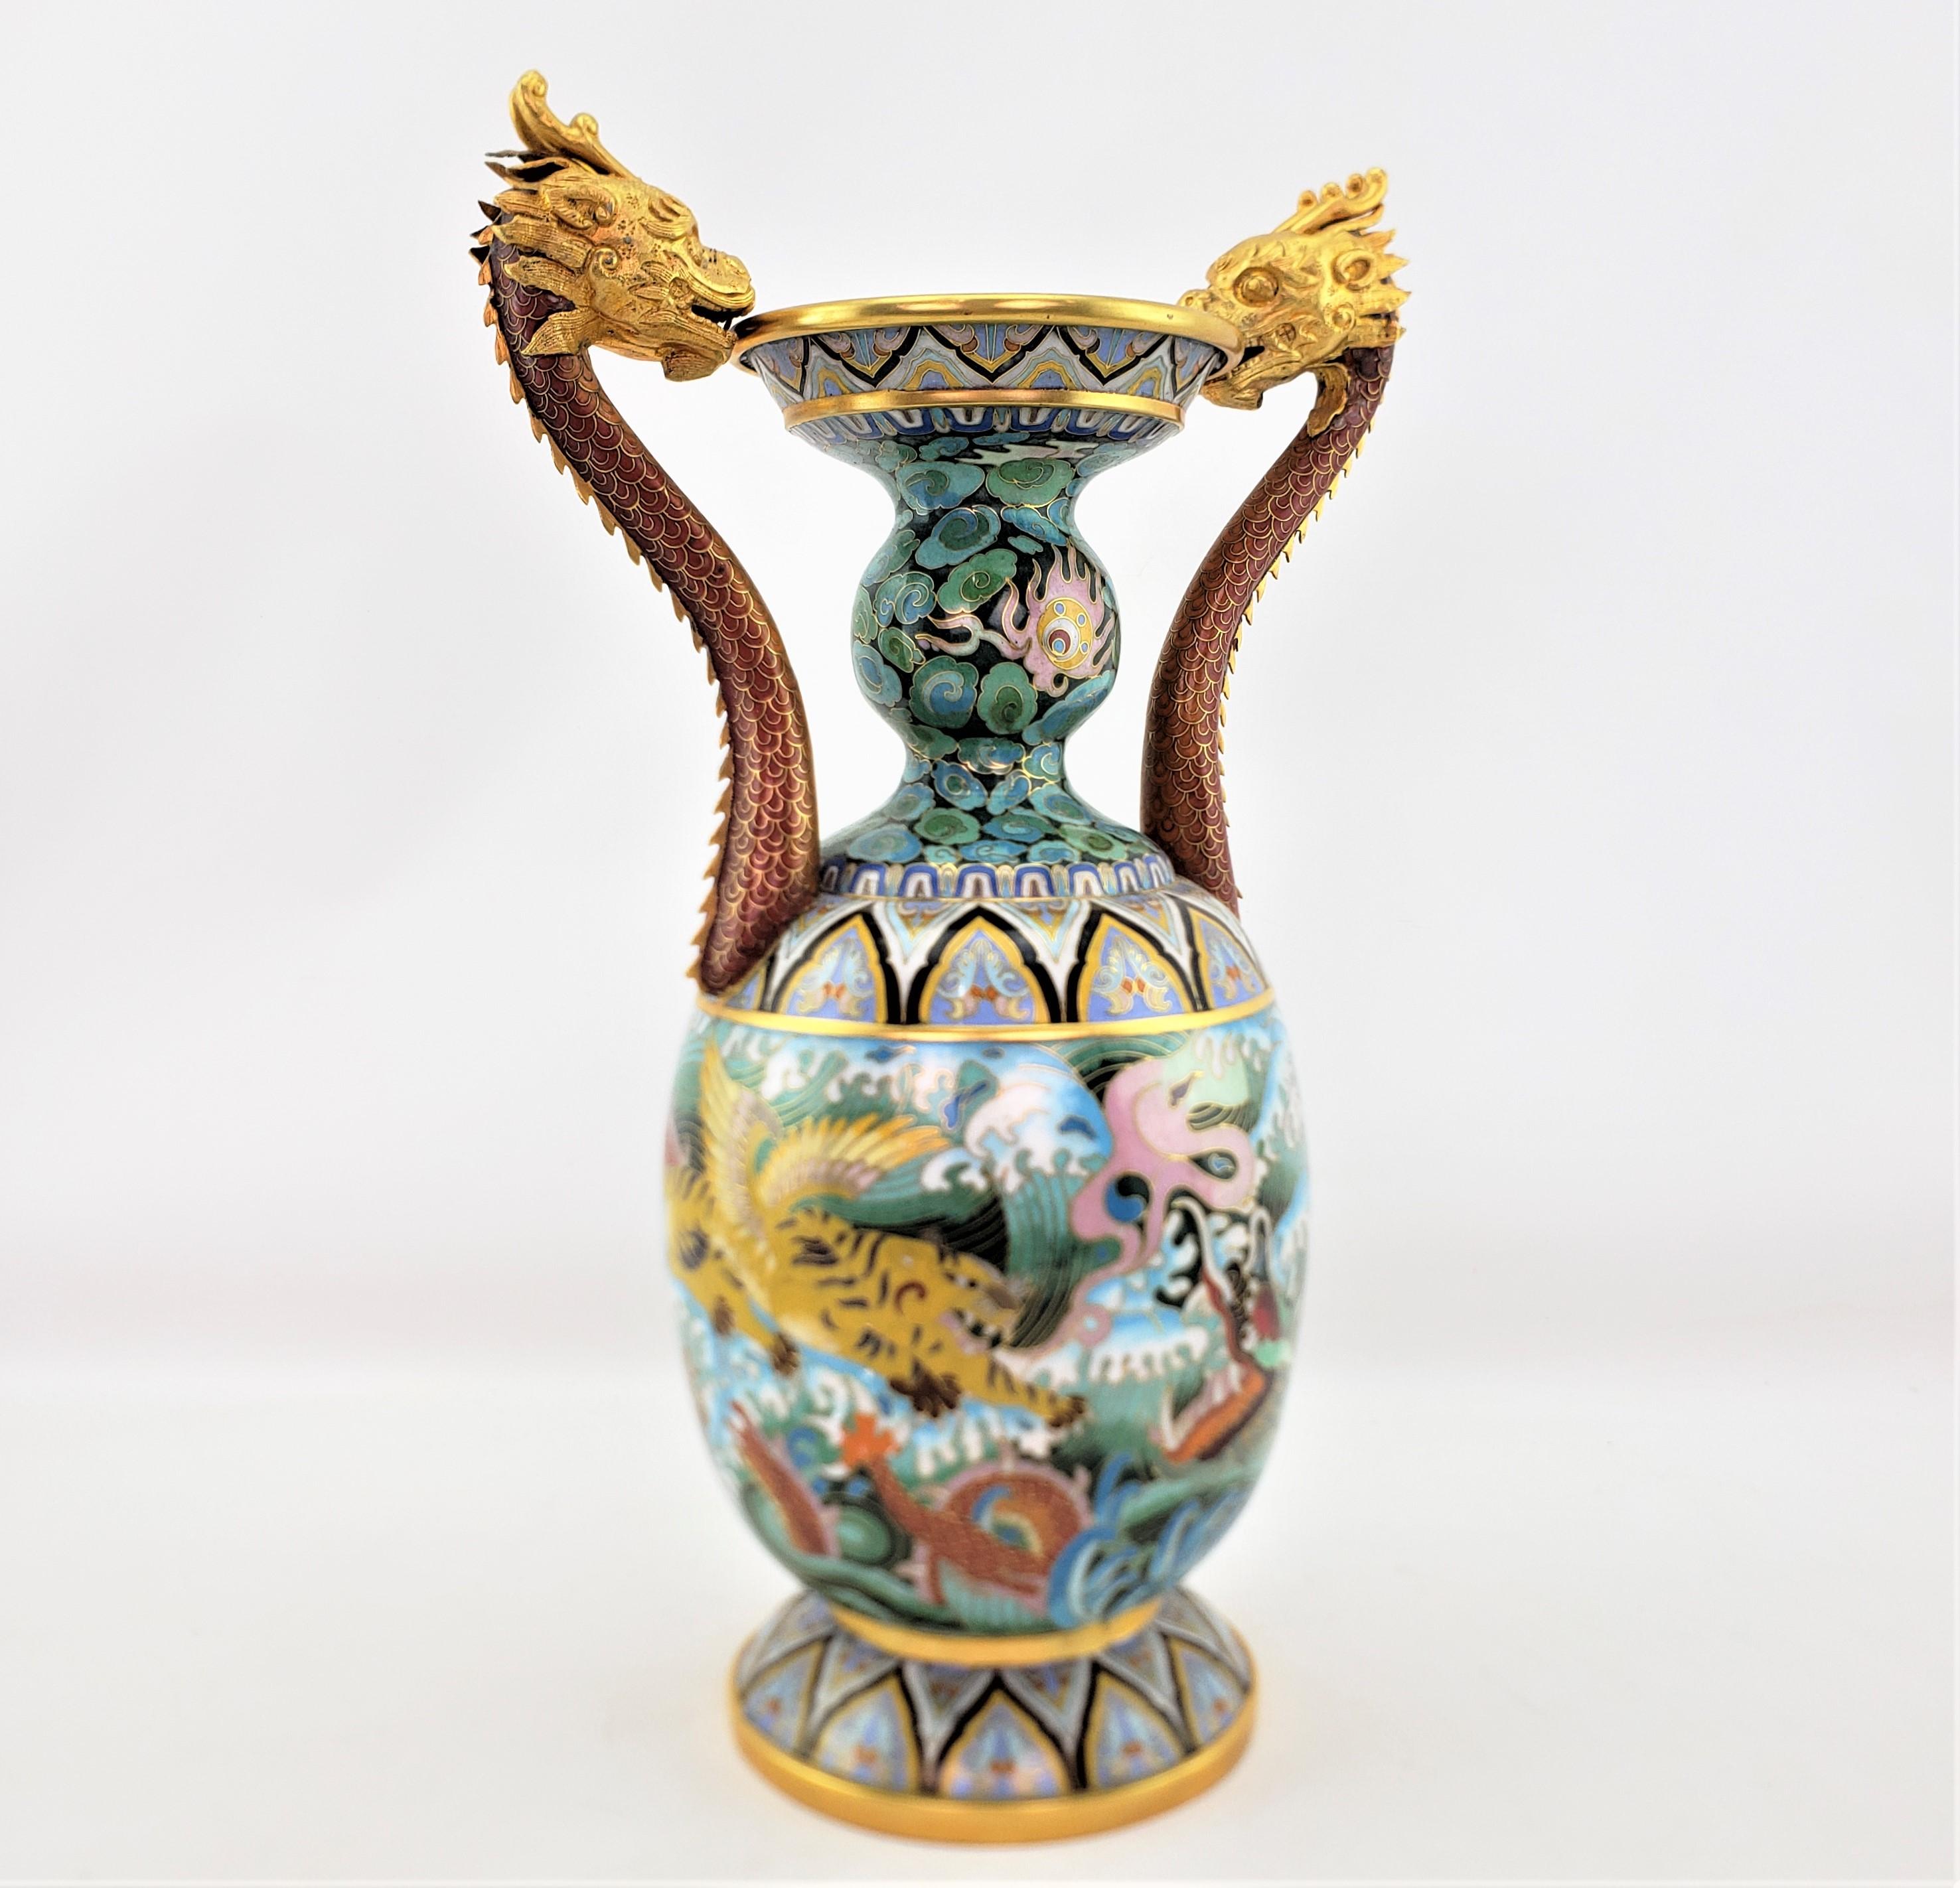 Diese große Cloissone-Vase ist von einem unbekannten Hersteller signiert und stammt aus China, datiert auf etwa 1980, und ist im chinesischen Export-Stil gehalten. Die Vase besteht aus Messing mit kunstvoll gegossenen und vergoldeten kaiserlichen